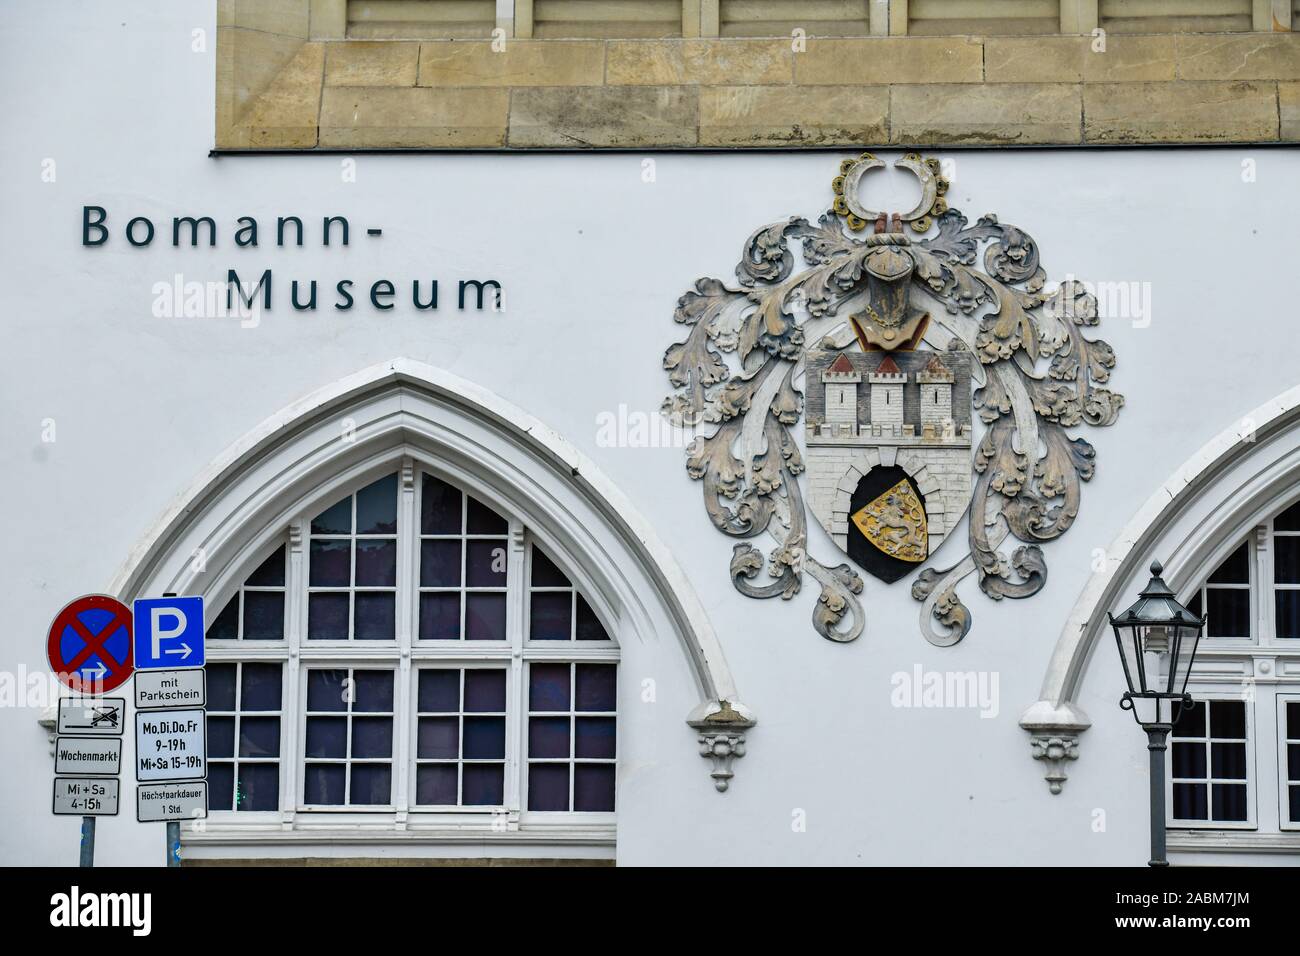 Bomann-Museum, Schloßplatz, Celle, Niedersachsen, Deutschland Foto Stock